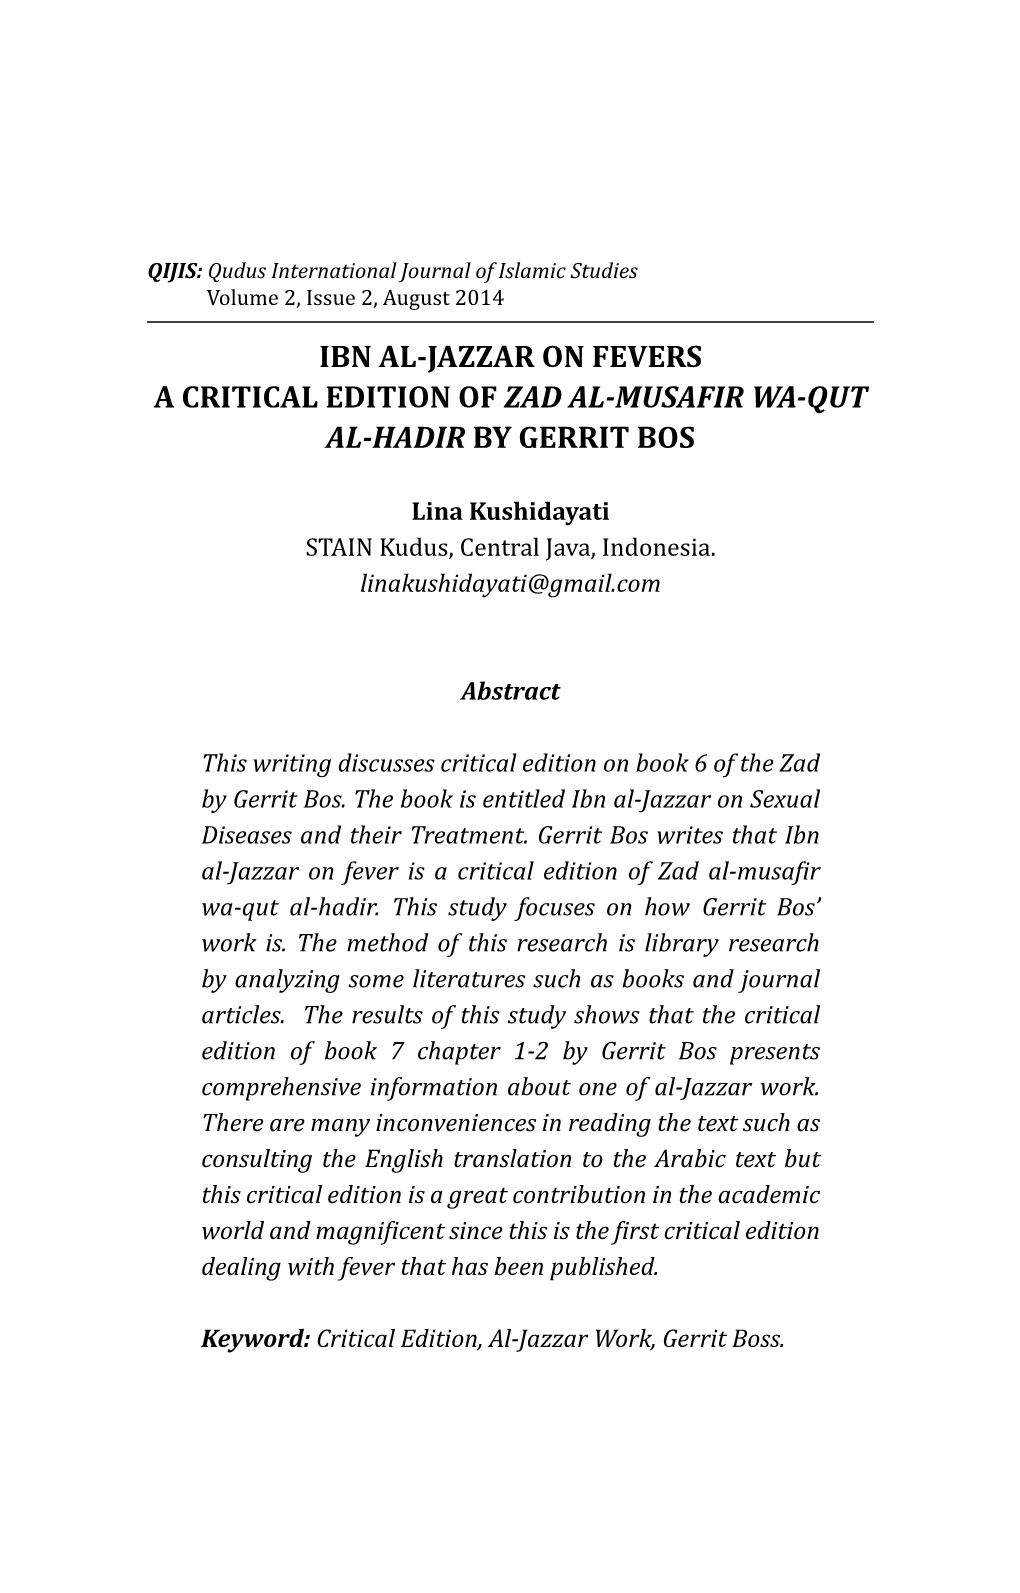 Ibn Al-Jazzar on Fevers a Critical Edition of Zad Al-Musafir Wa-Qut Al-Hadir by Gerrit Bos